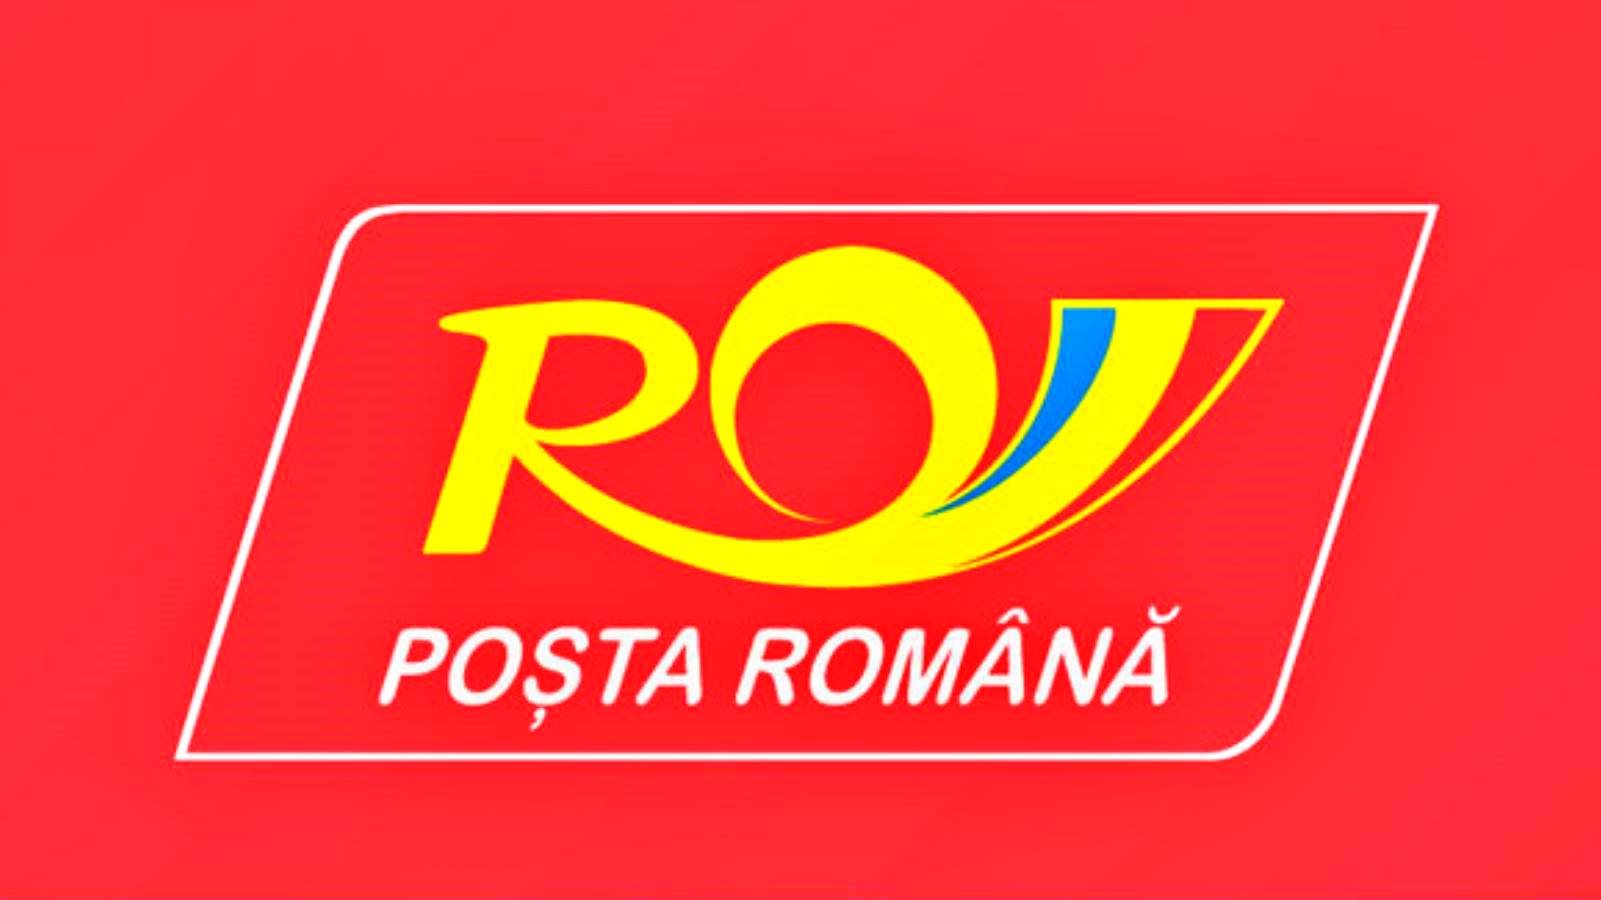 Den officielle meddelelse fra den rumænske post, der overraskede mange rumænere